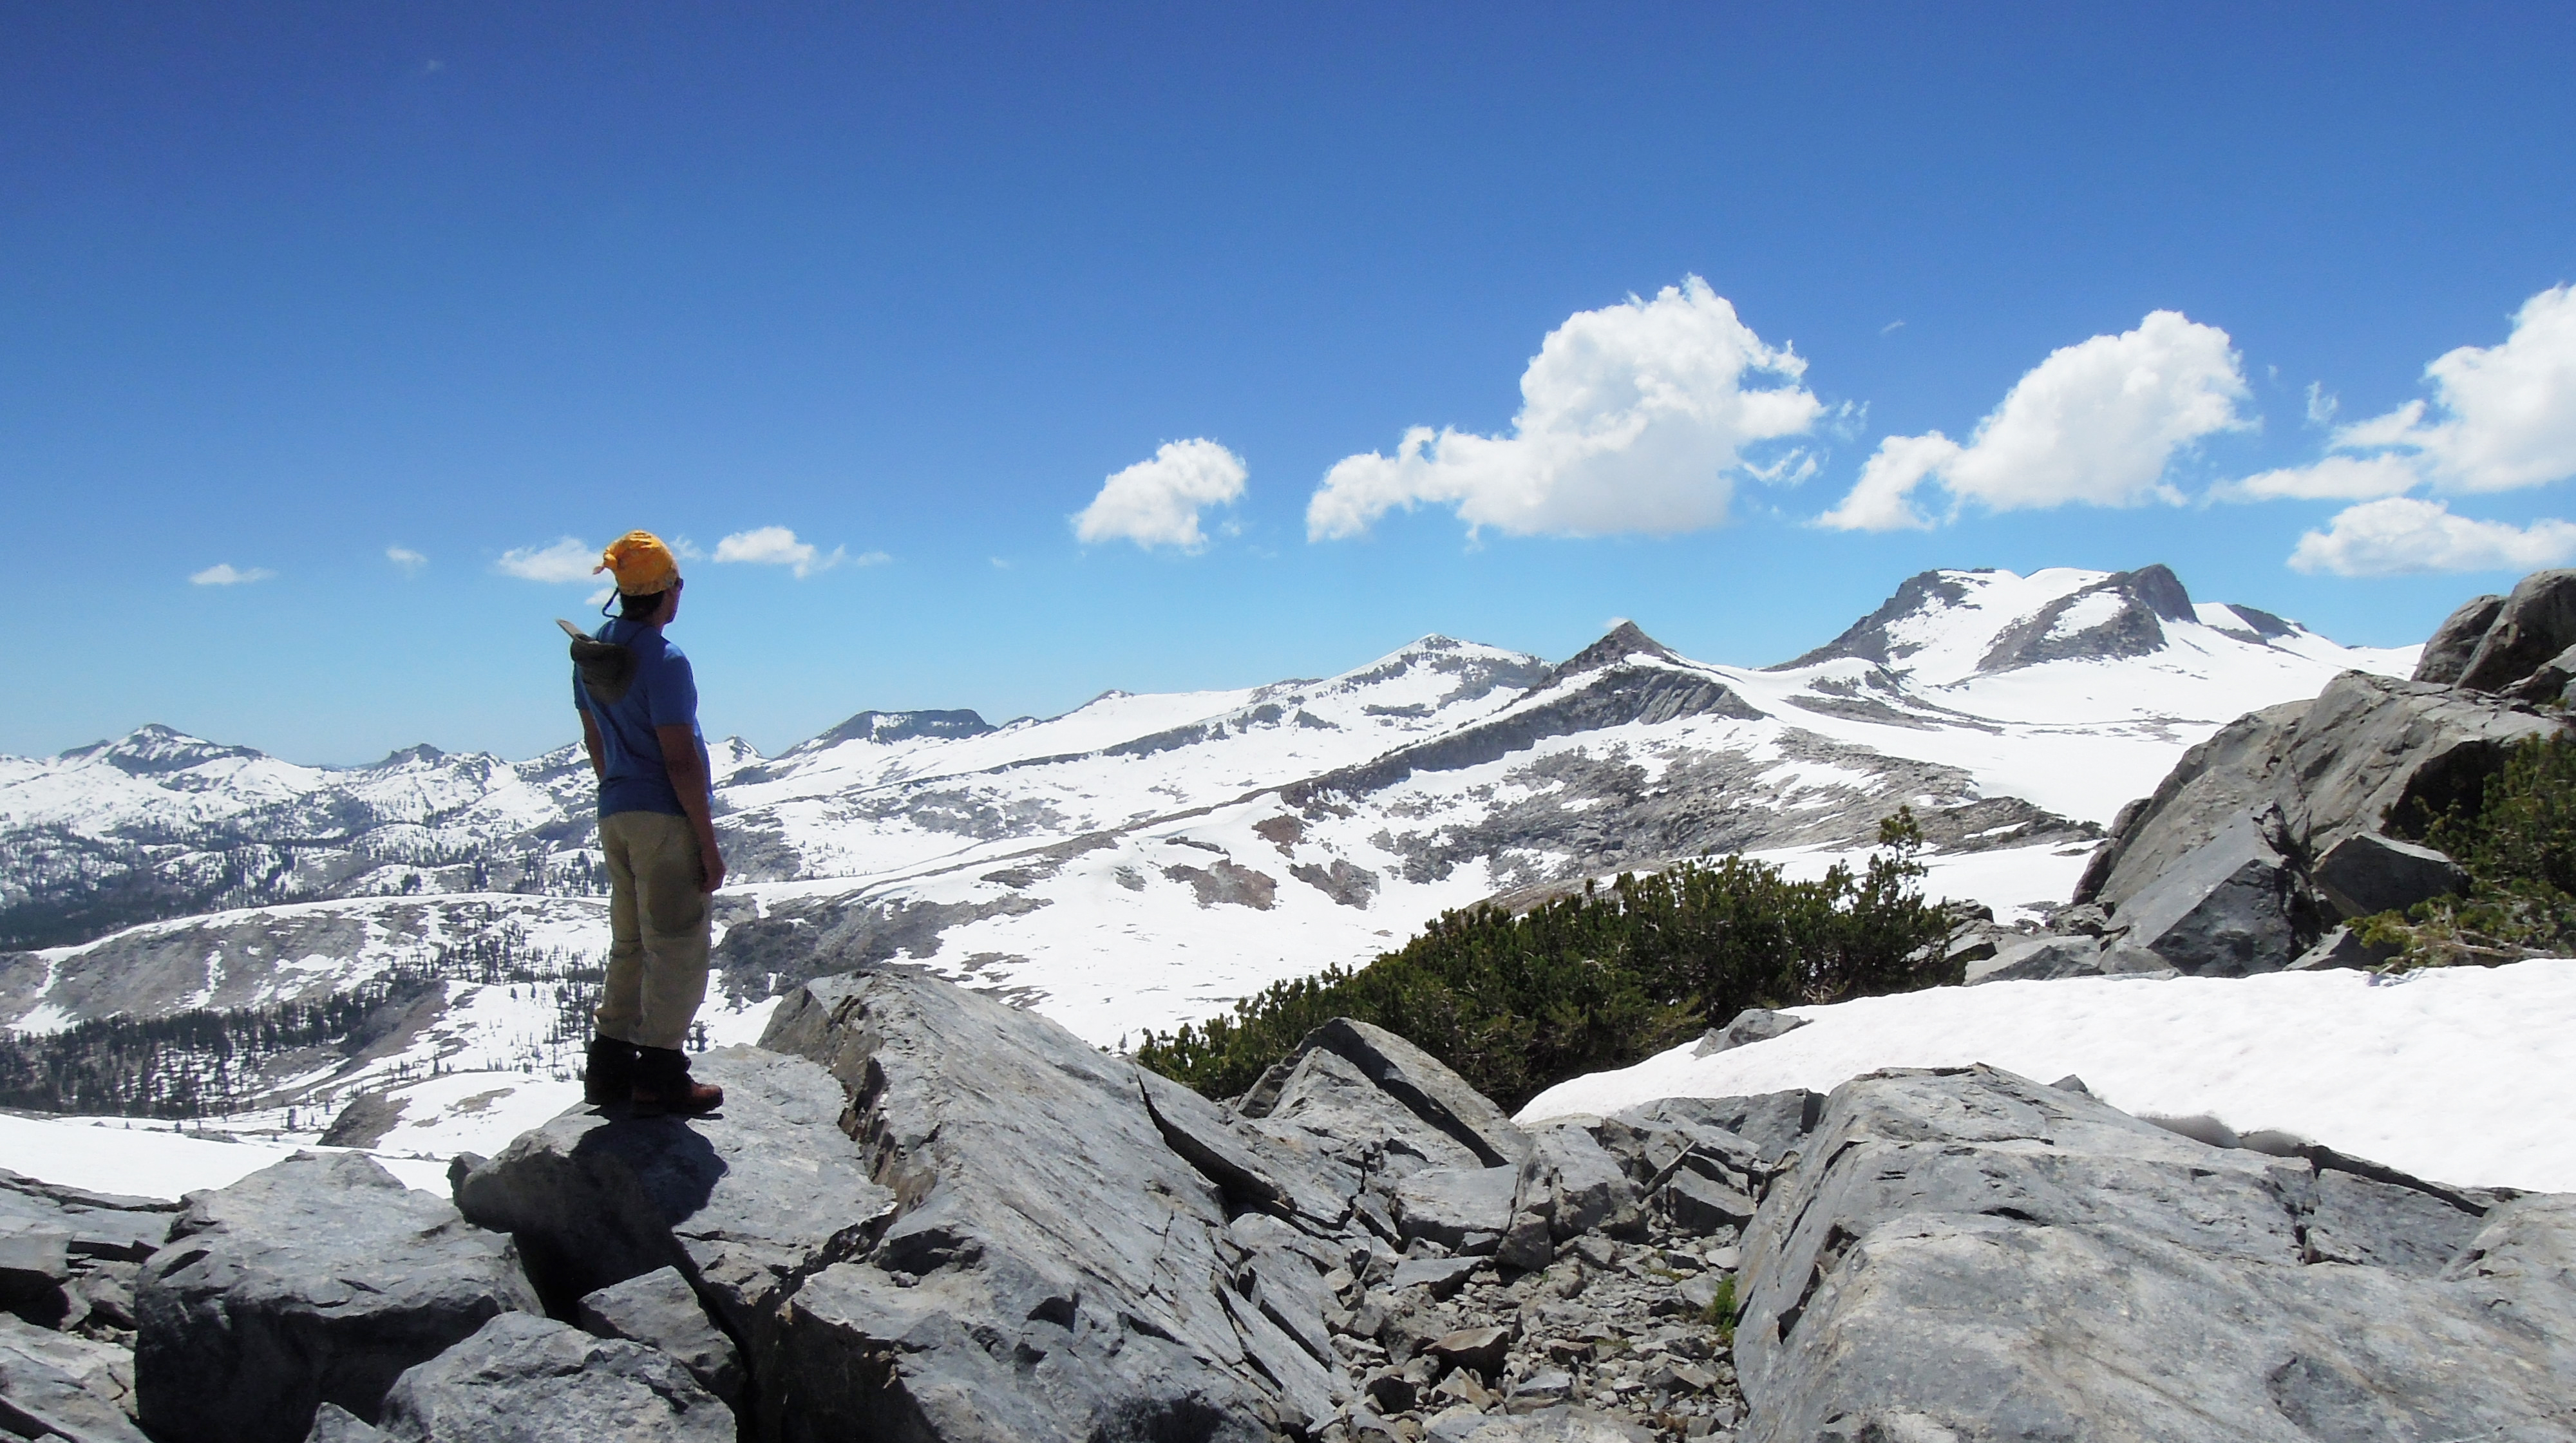 Patrick-Robinson-Yosemite-backpacking